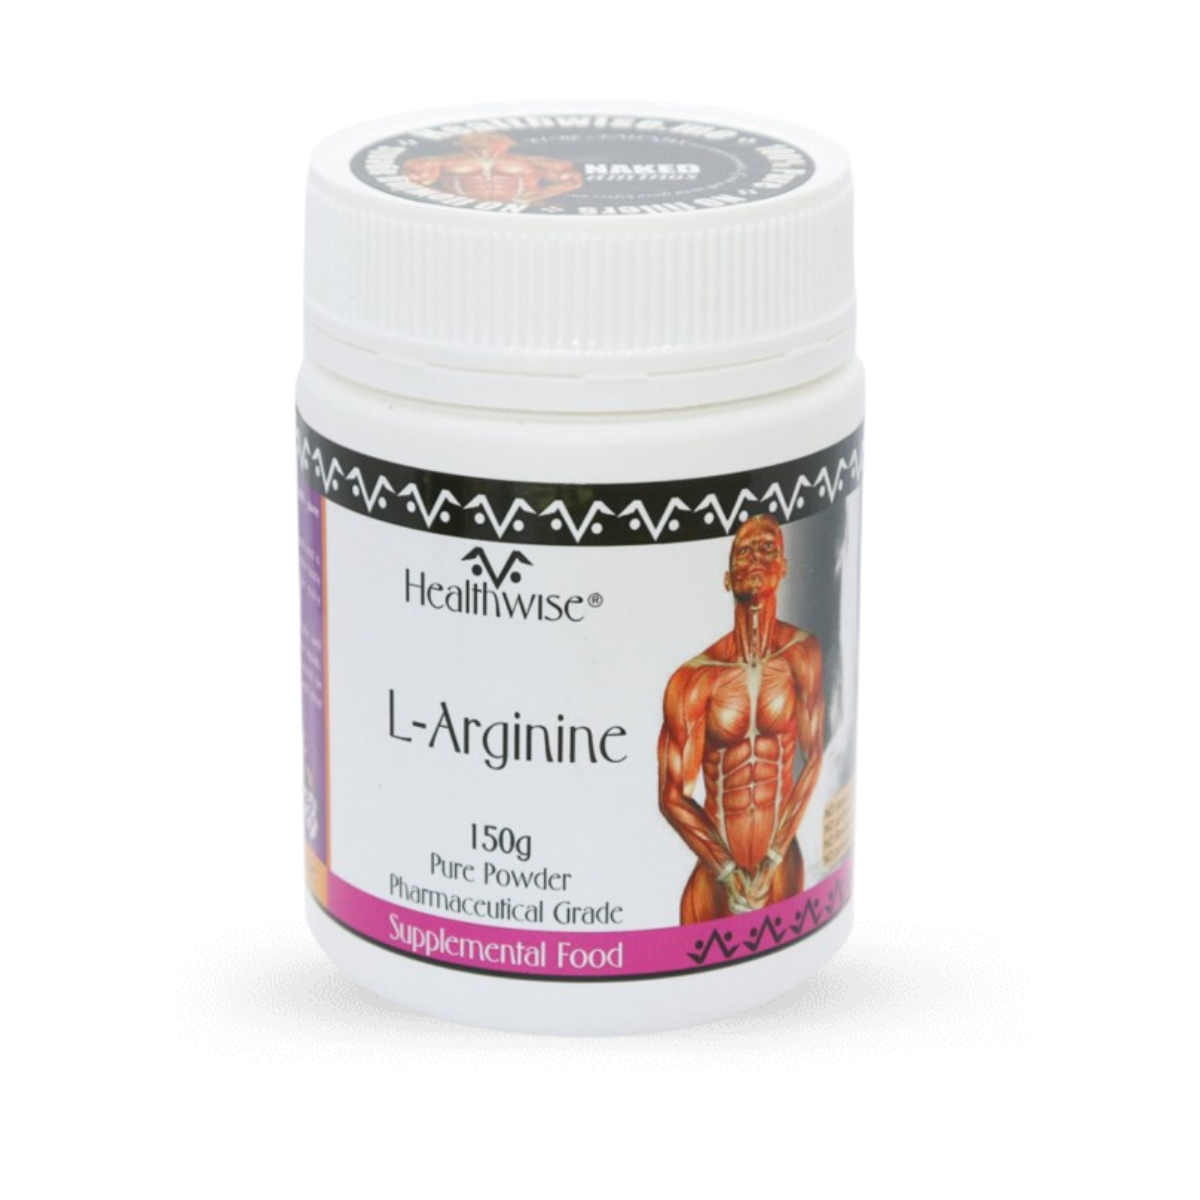 HealthWise L-Arginine Powder 150g